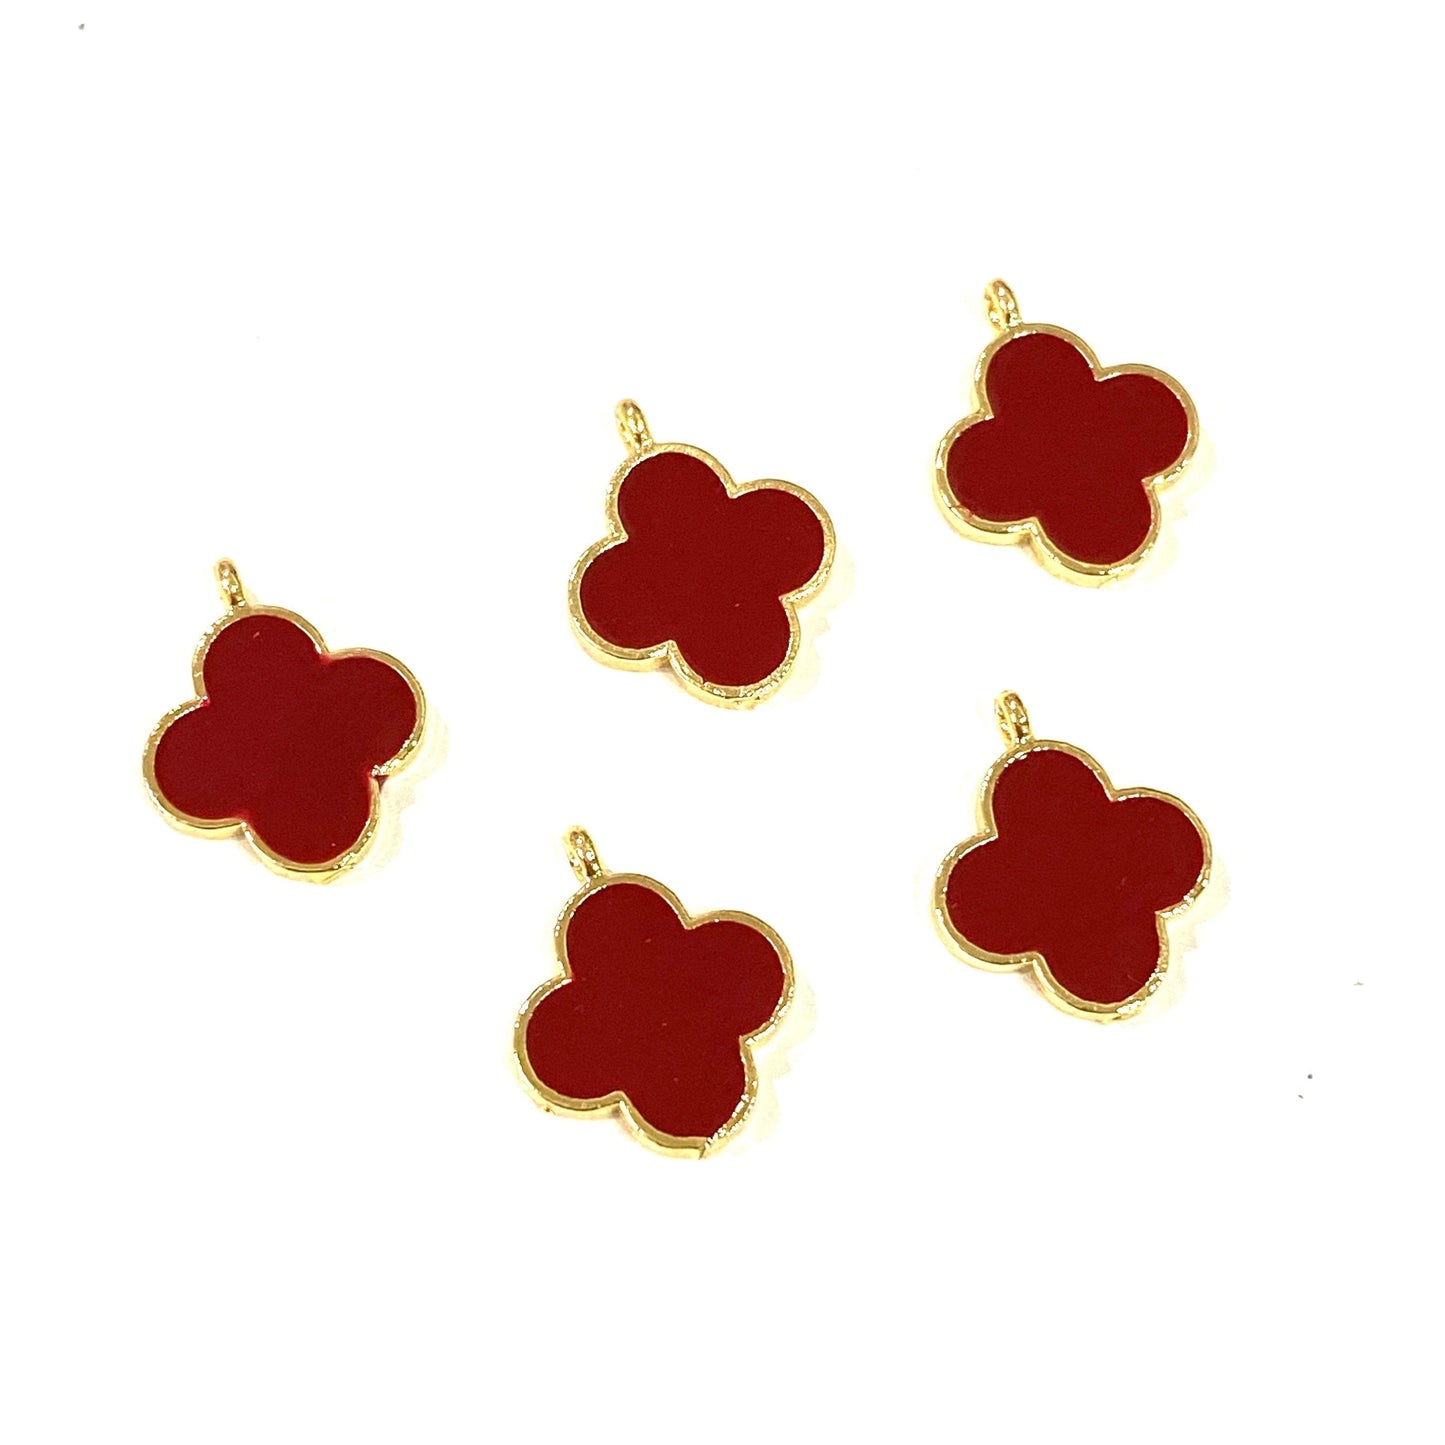 Klee-Schüttelaufsatz mit vergoldeter Emaille – Rot